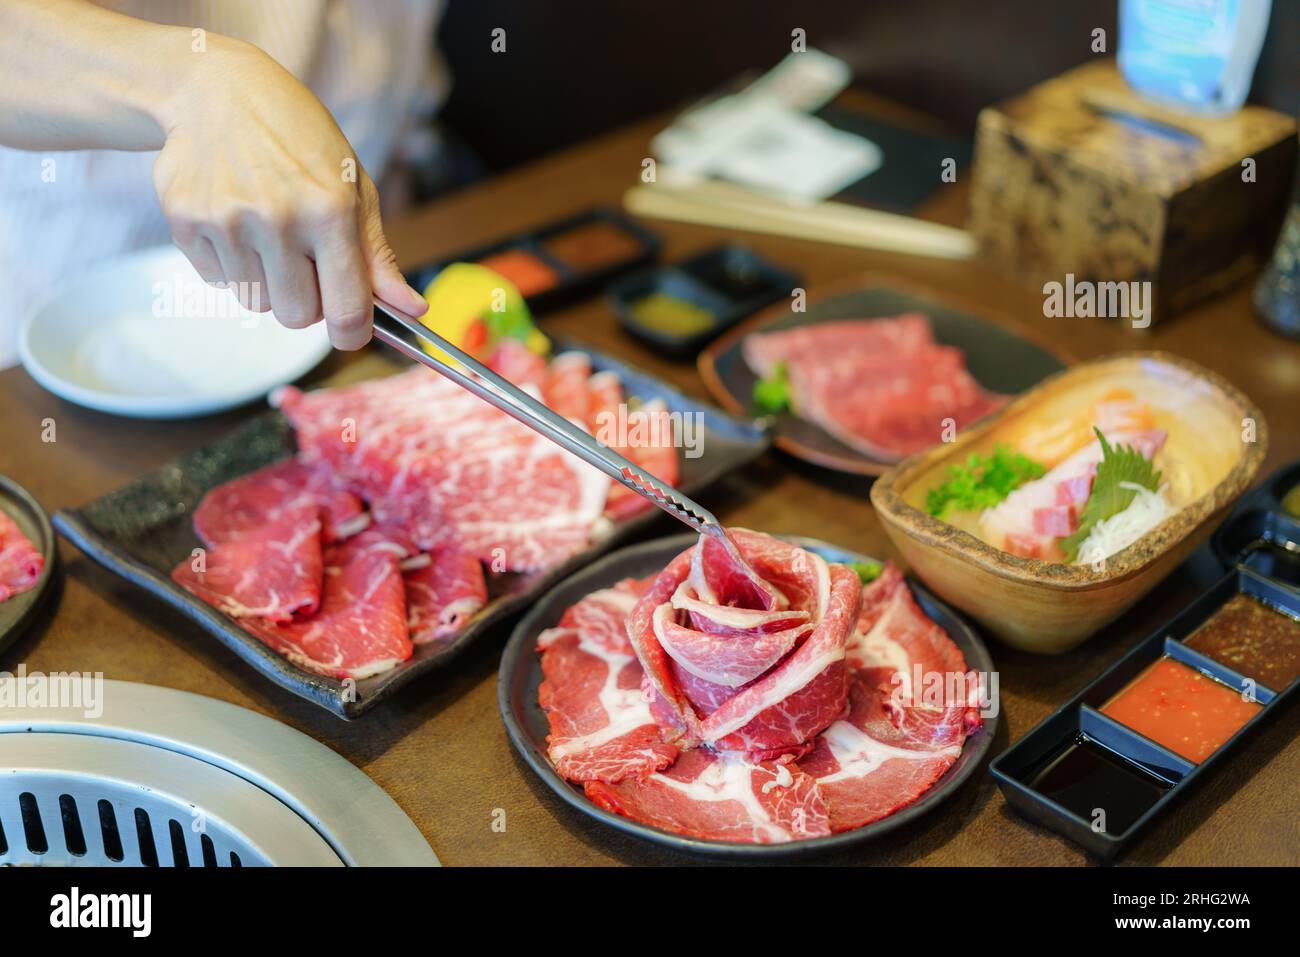 Die Hand einer Frau verwendet Zangen, um Wagyu-Rindfleisch auf einen Teller zu legen, bereit zum Grillen über Holzkohle, was das kulinarische Erlebnis in einem japanischen Restaurant bereichert Stockfoto